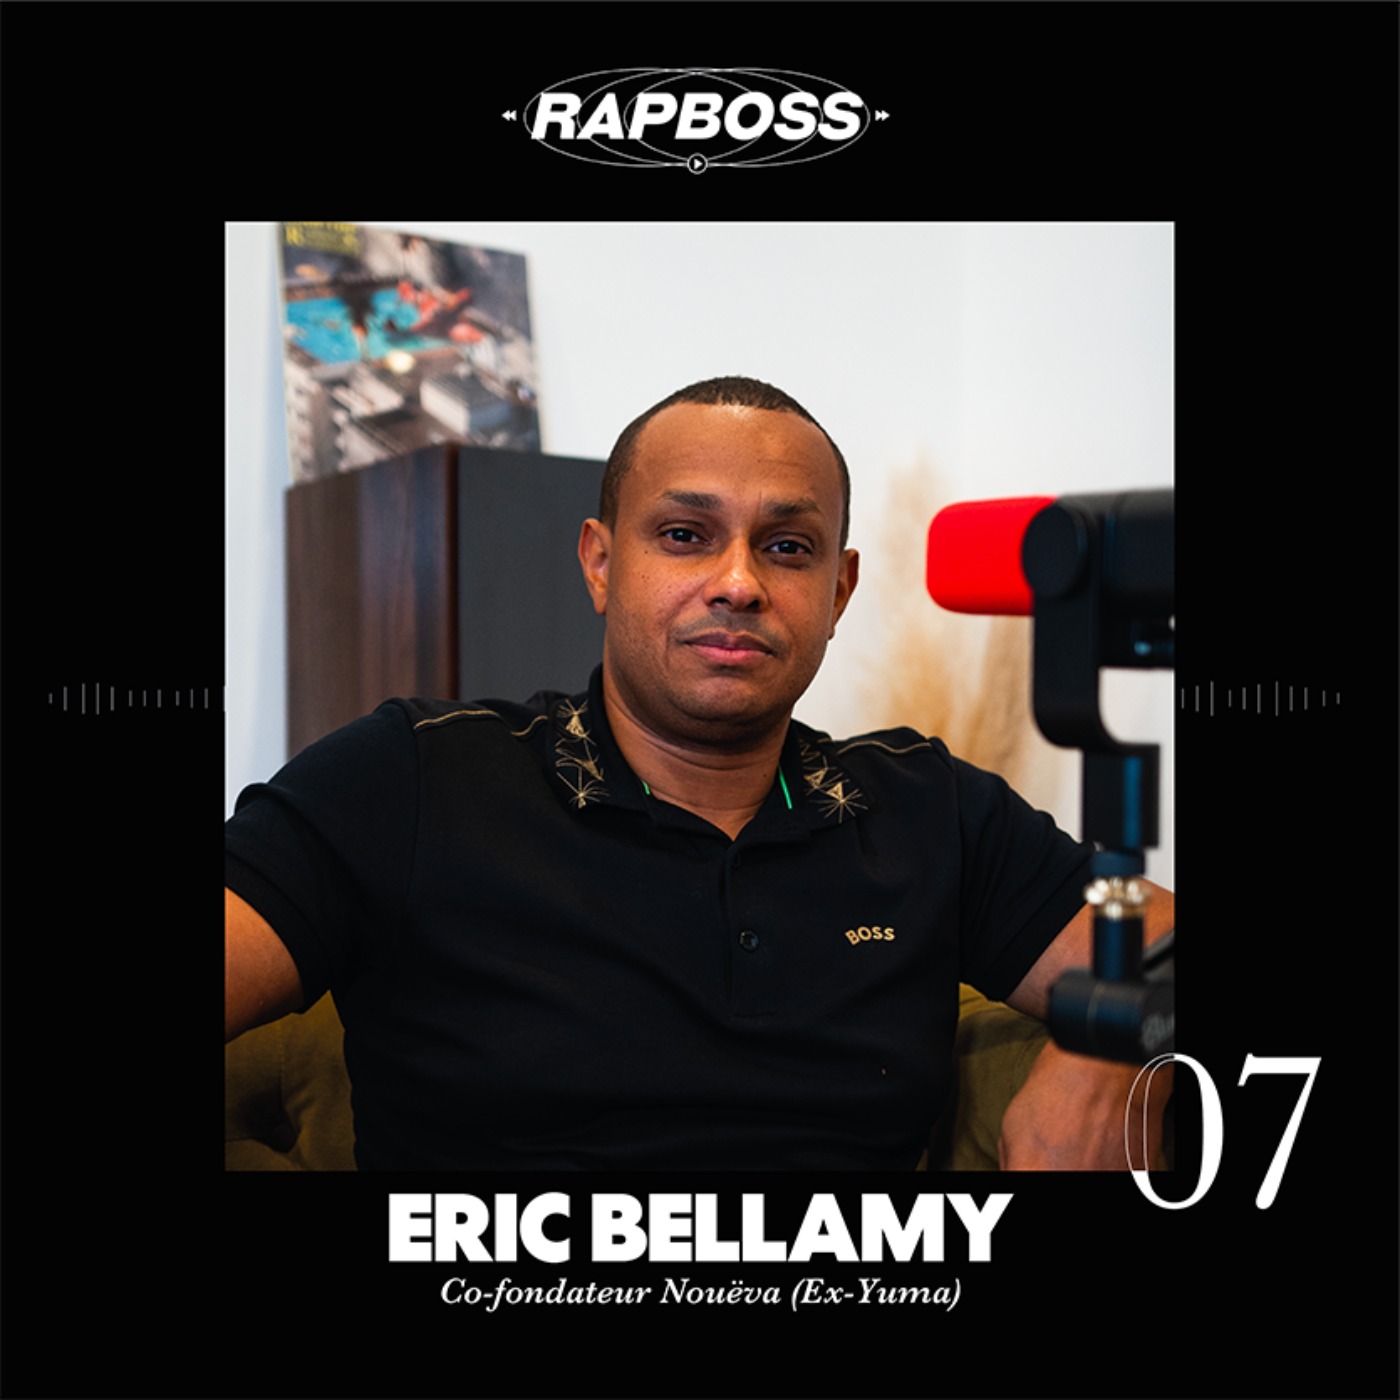 #07 Éric Bellamy - Devenir le tourneur du rap (Damso, SCH, Aya) vendre à Vivendi, tout quitter et s’associer à Live Nation